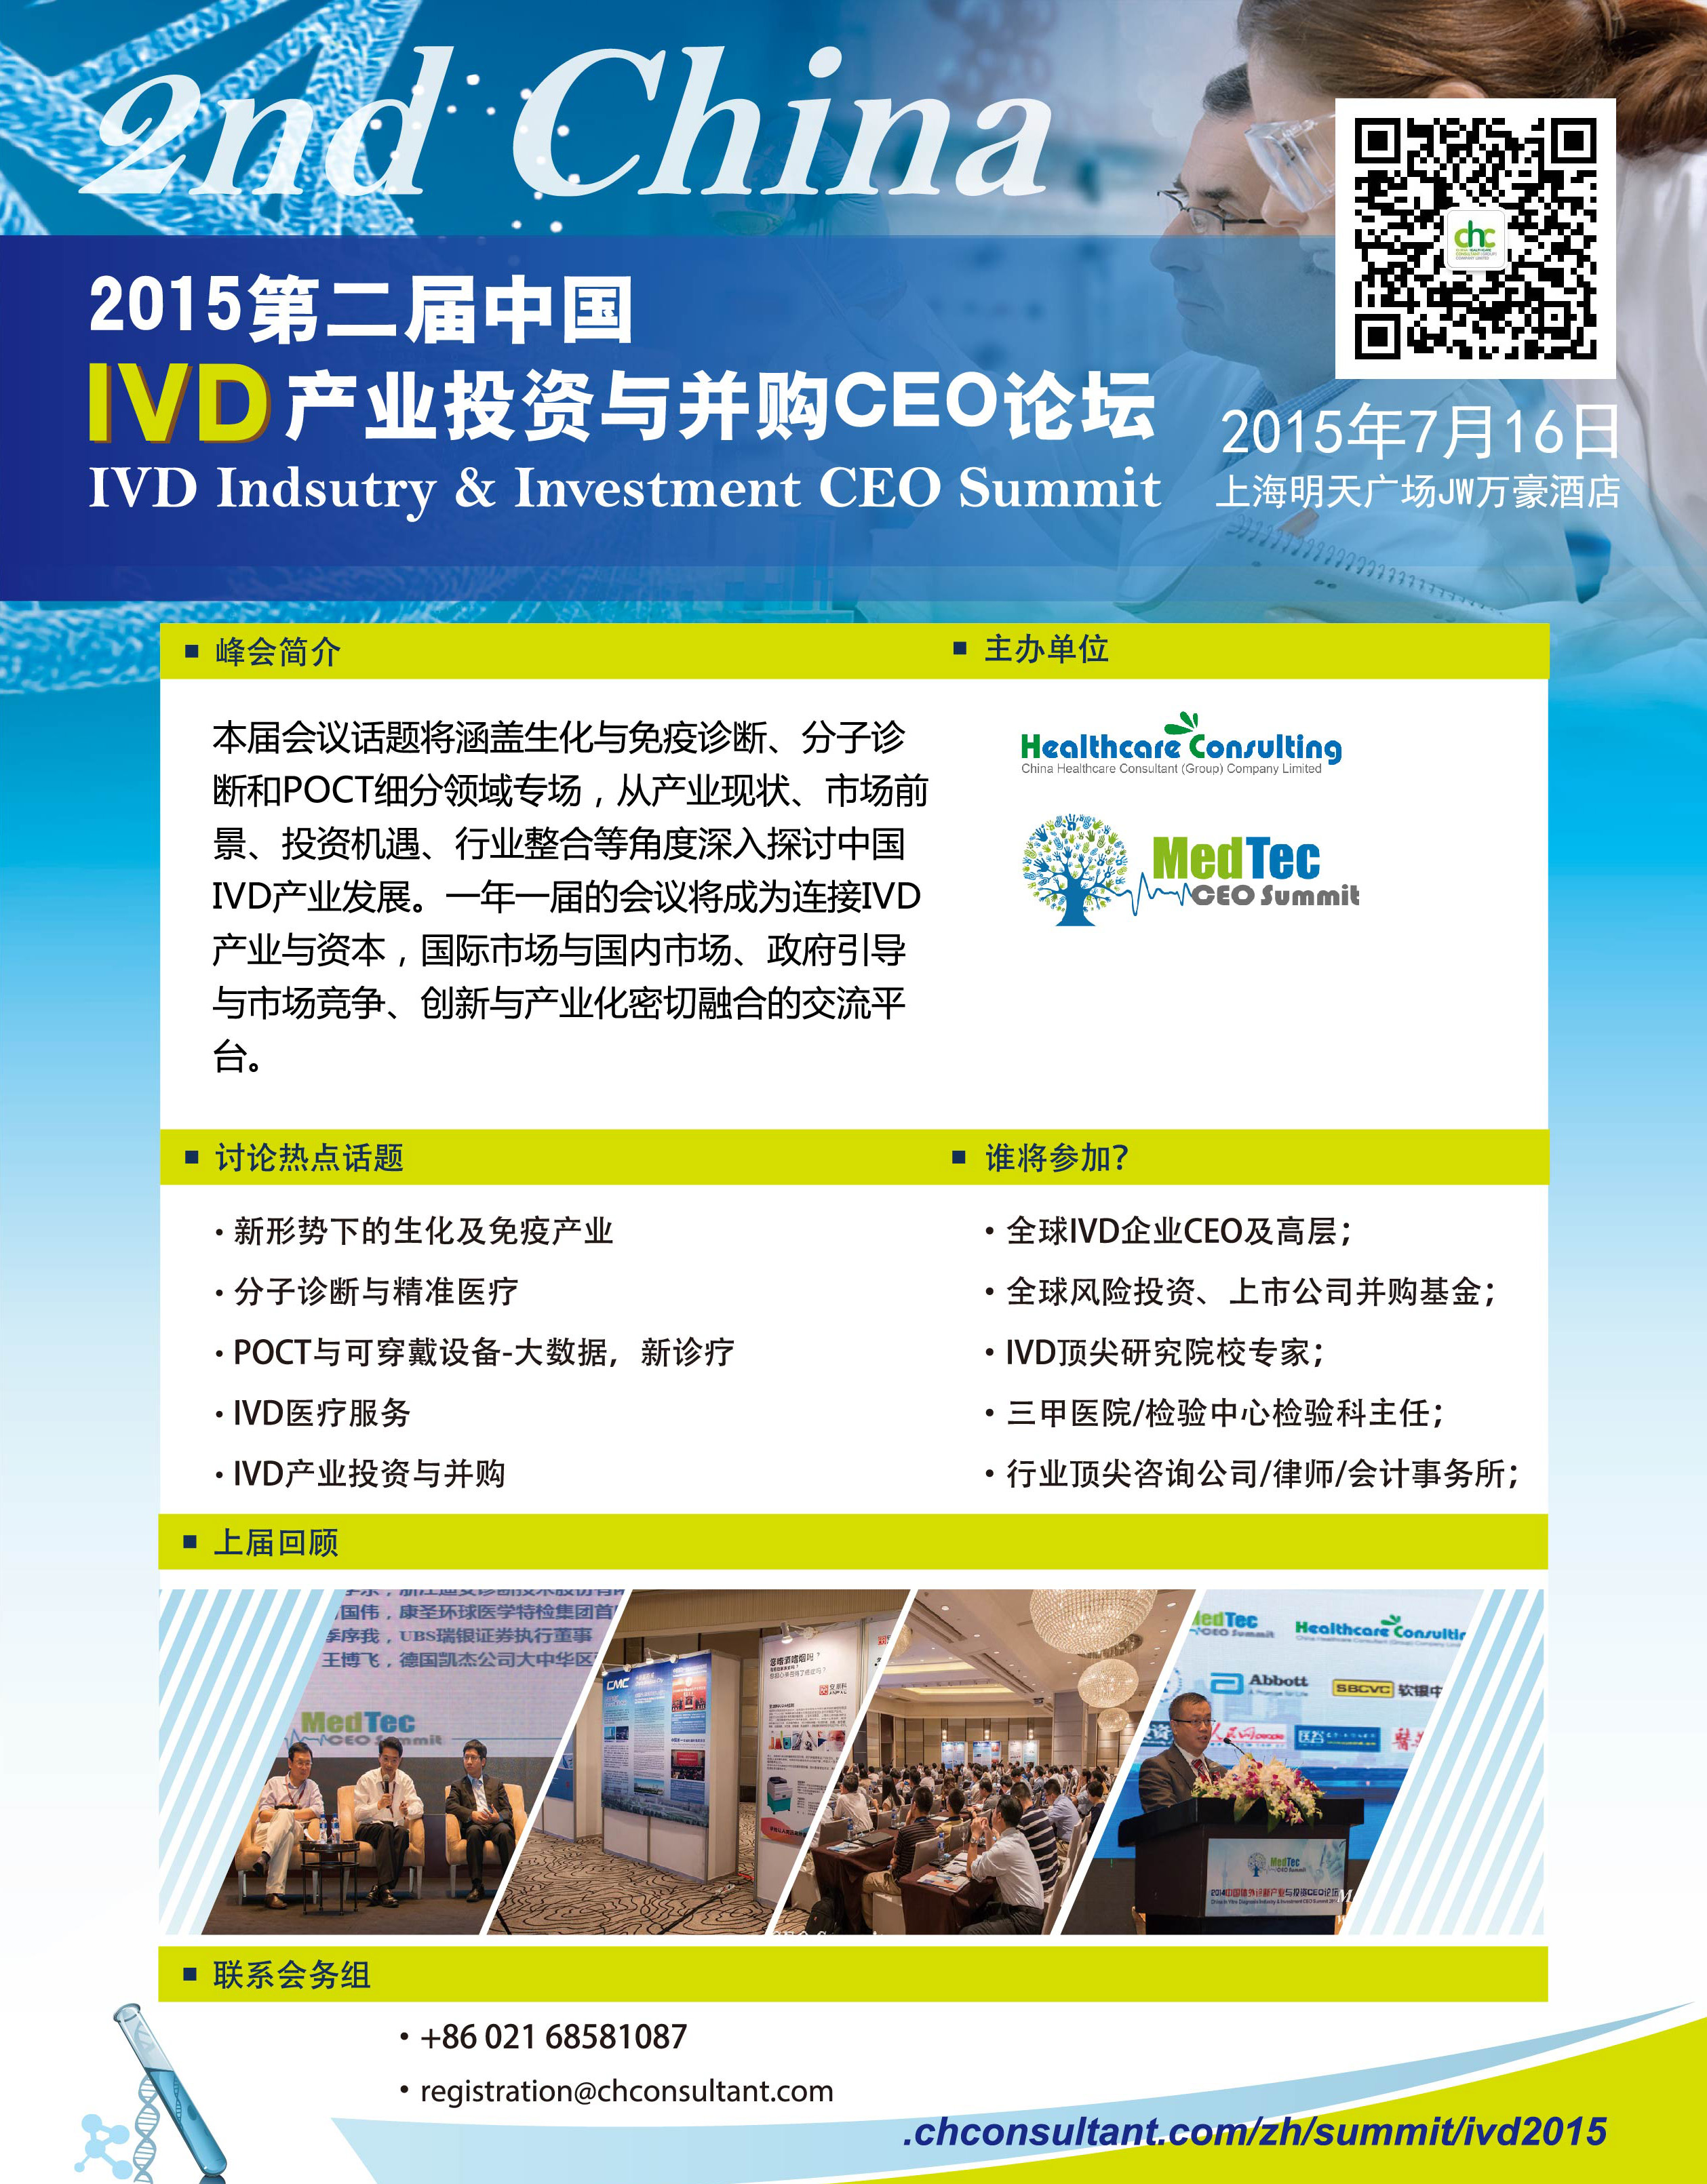 第二屆中國IVD產業投資與並購CEO論壇